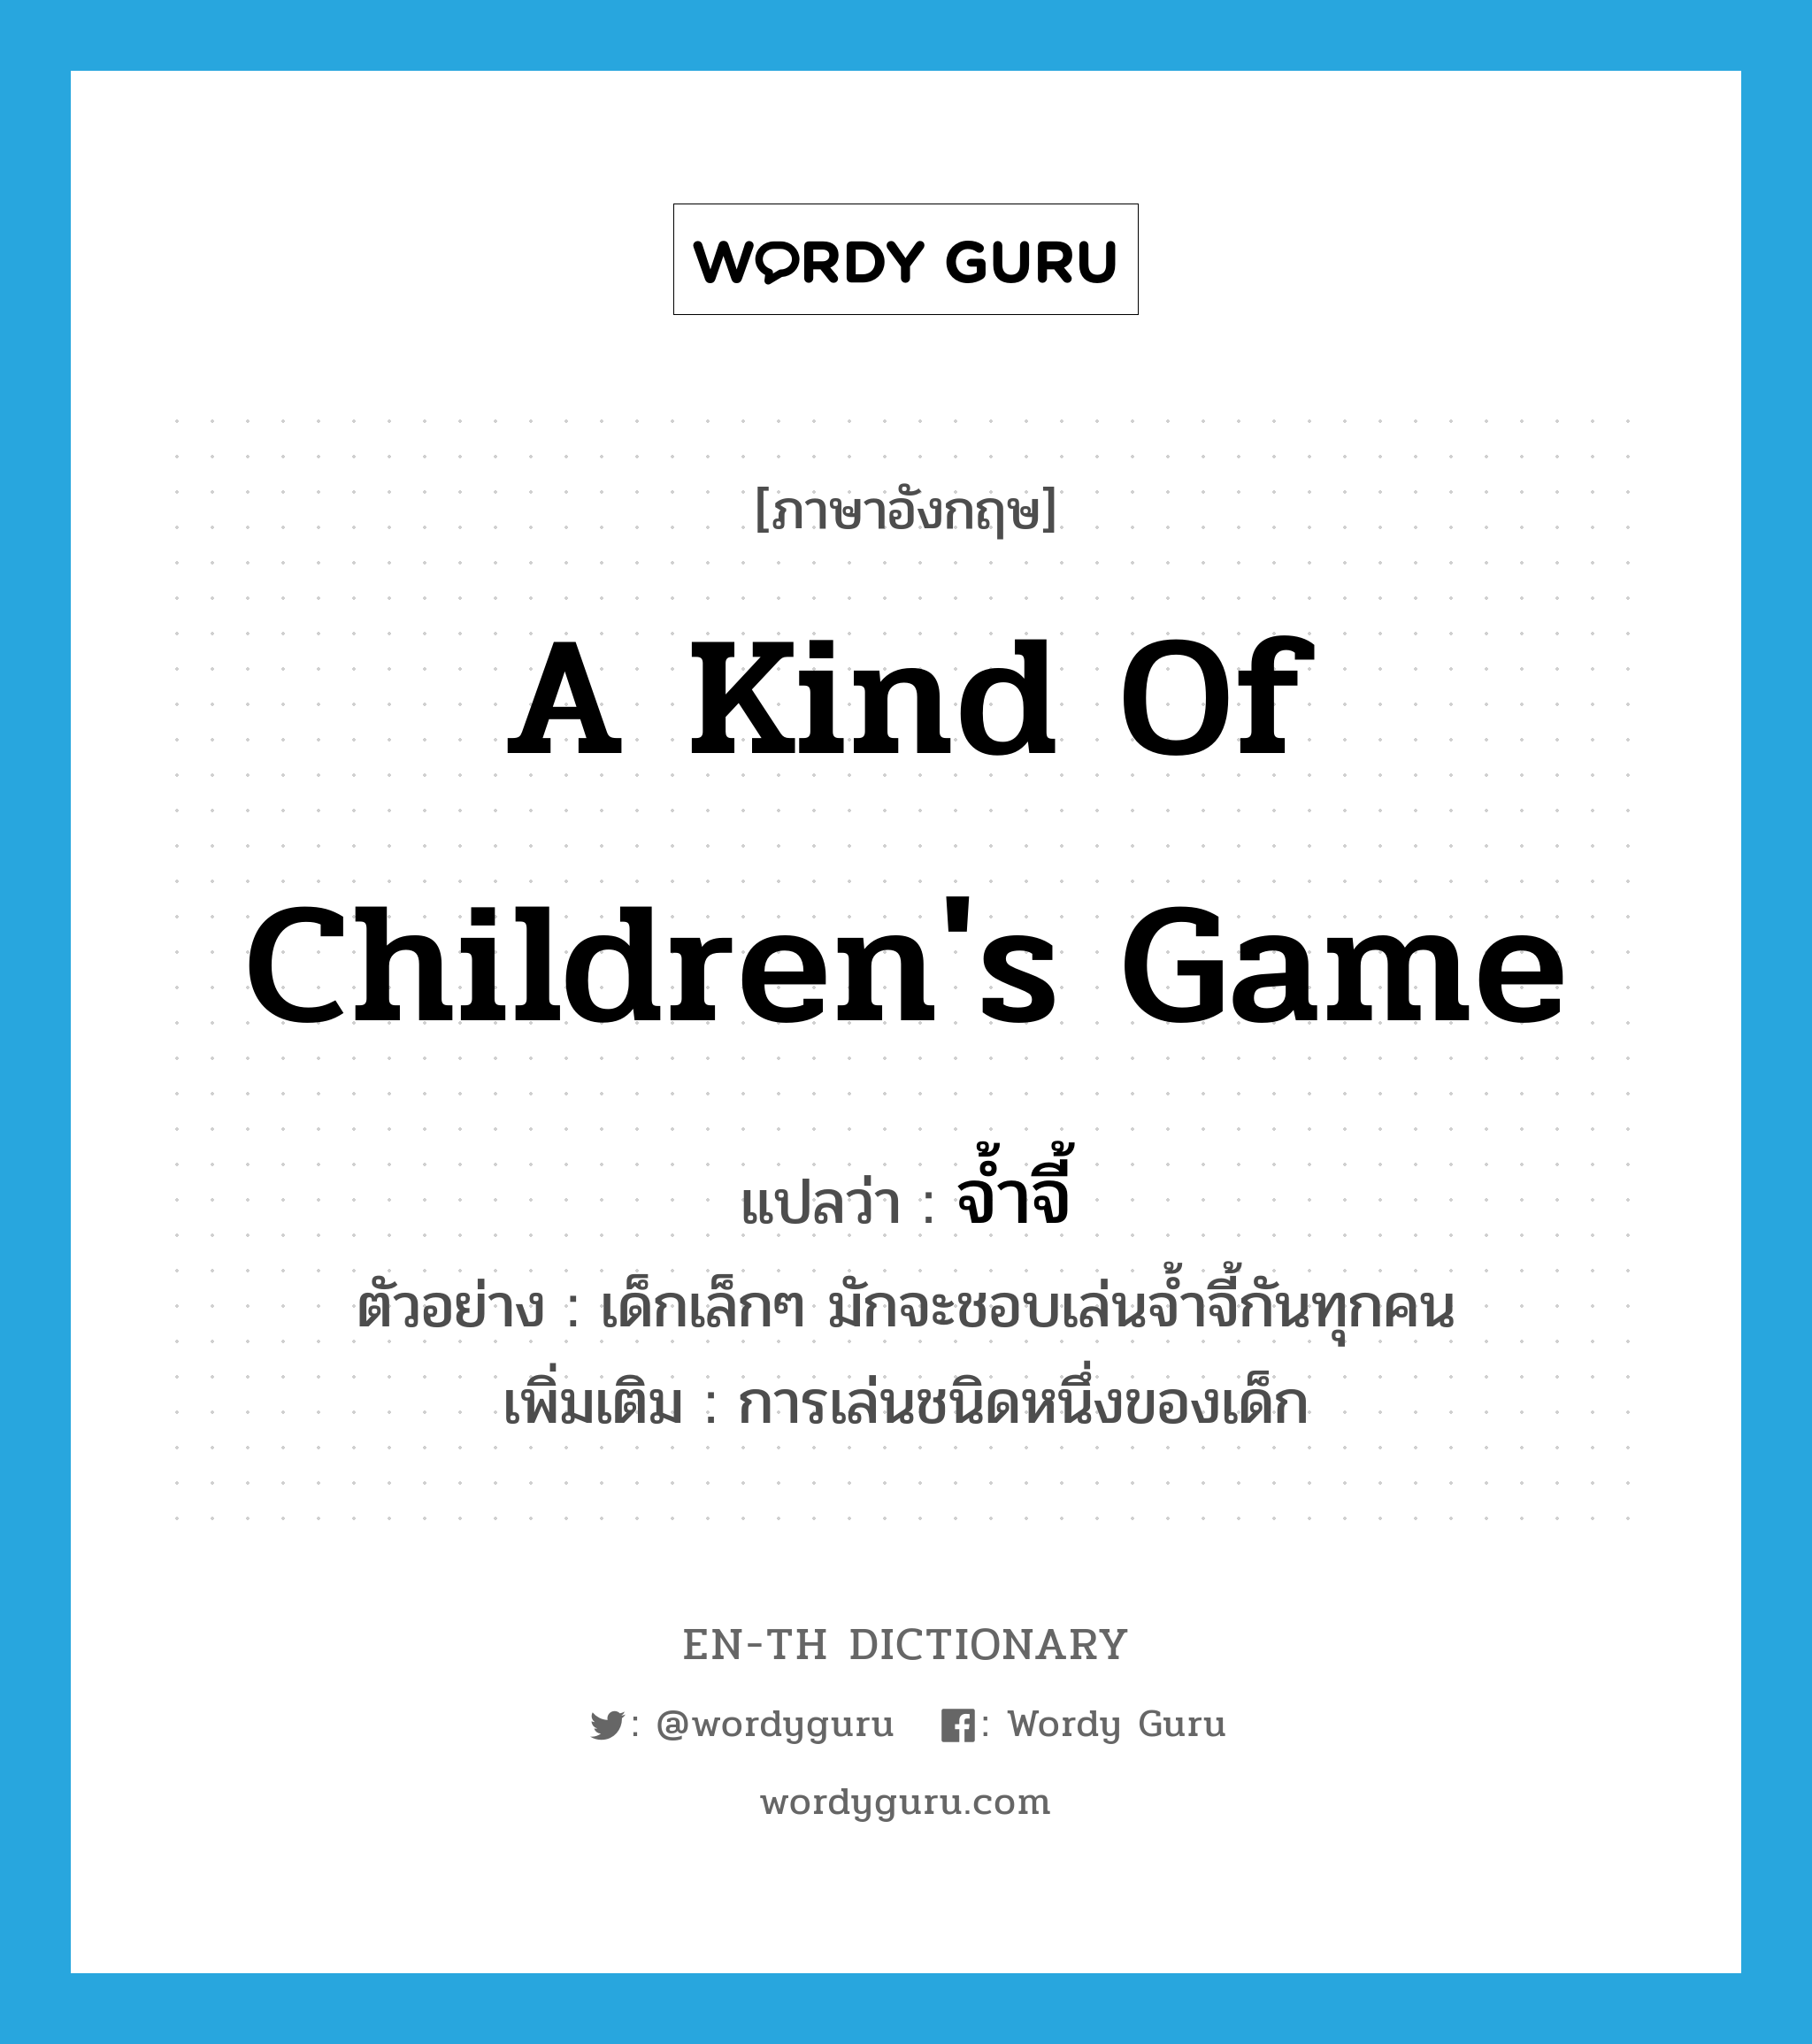 a kind of children's game แปลว่า? คำศัพท์ในกลุ่มประเภท N, คำศัพท์ภาษาอังกฤษ a kind of children's game แปลว่า จ้ำจี้ ประเภท N ตัวอย่าง เด็กเล็กๆ มักจะชอบเล่นจ้ำจี้กันทุกคน เพิ่มเติม การเล่นชนิดหนึ่งของเด็ก หมวด N